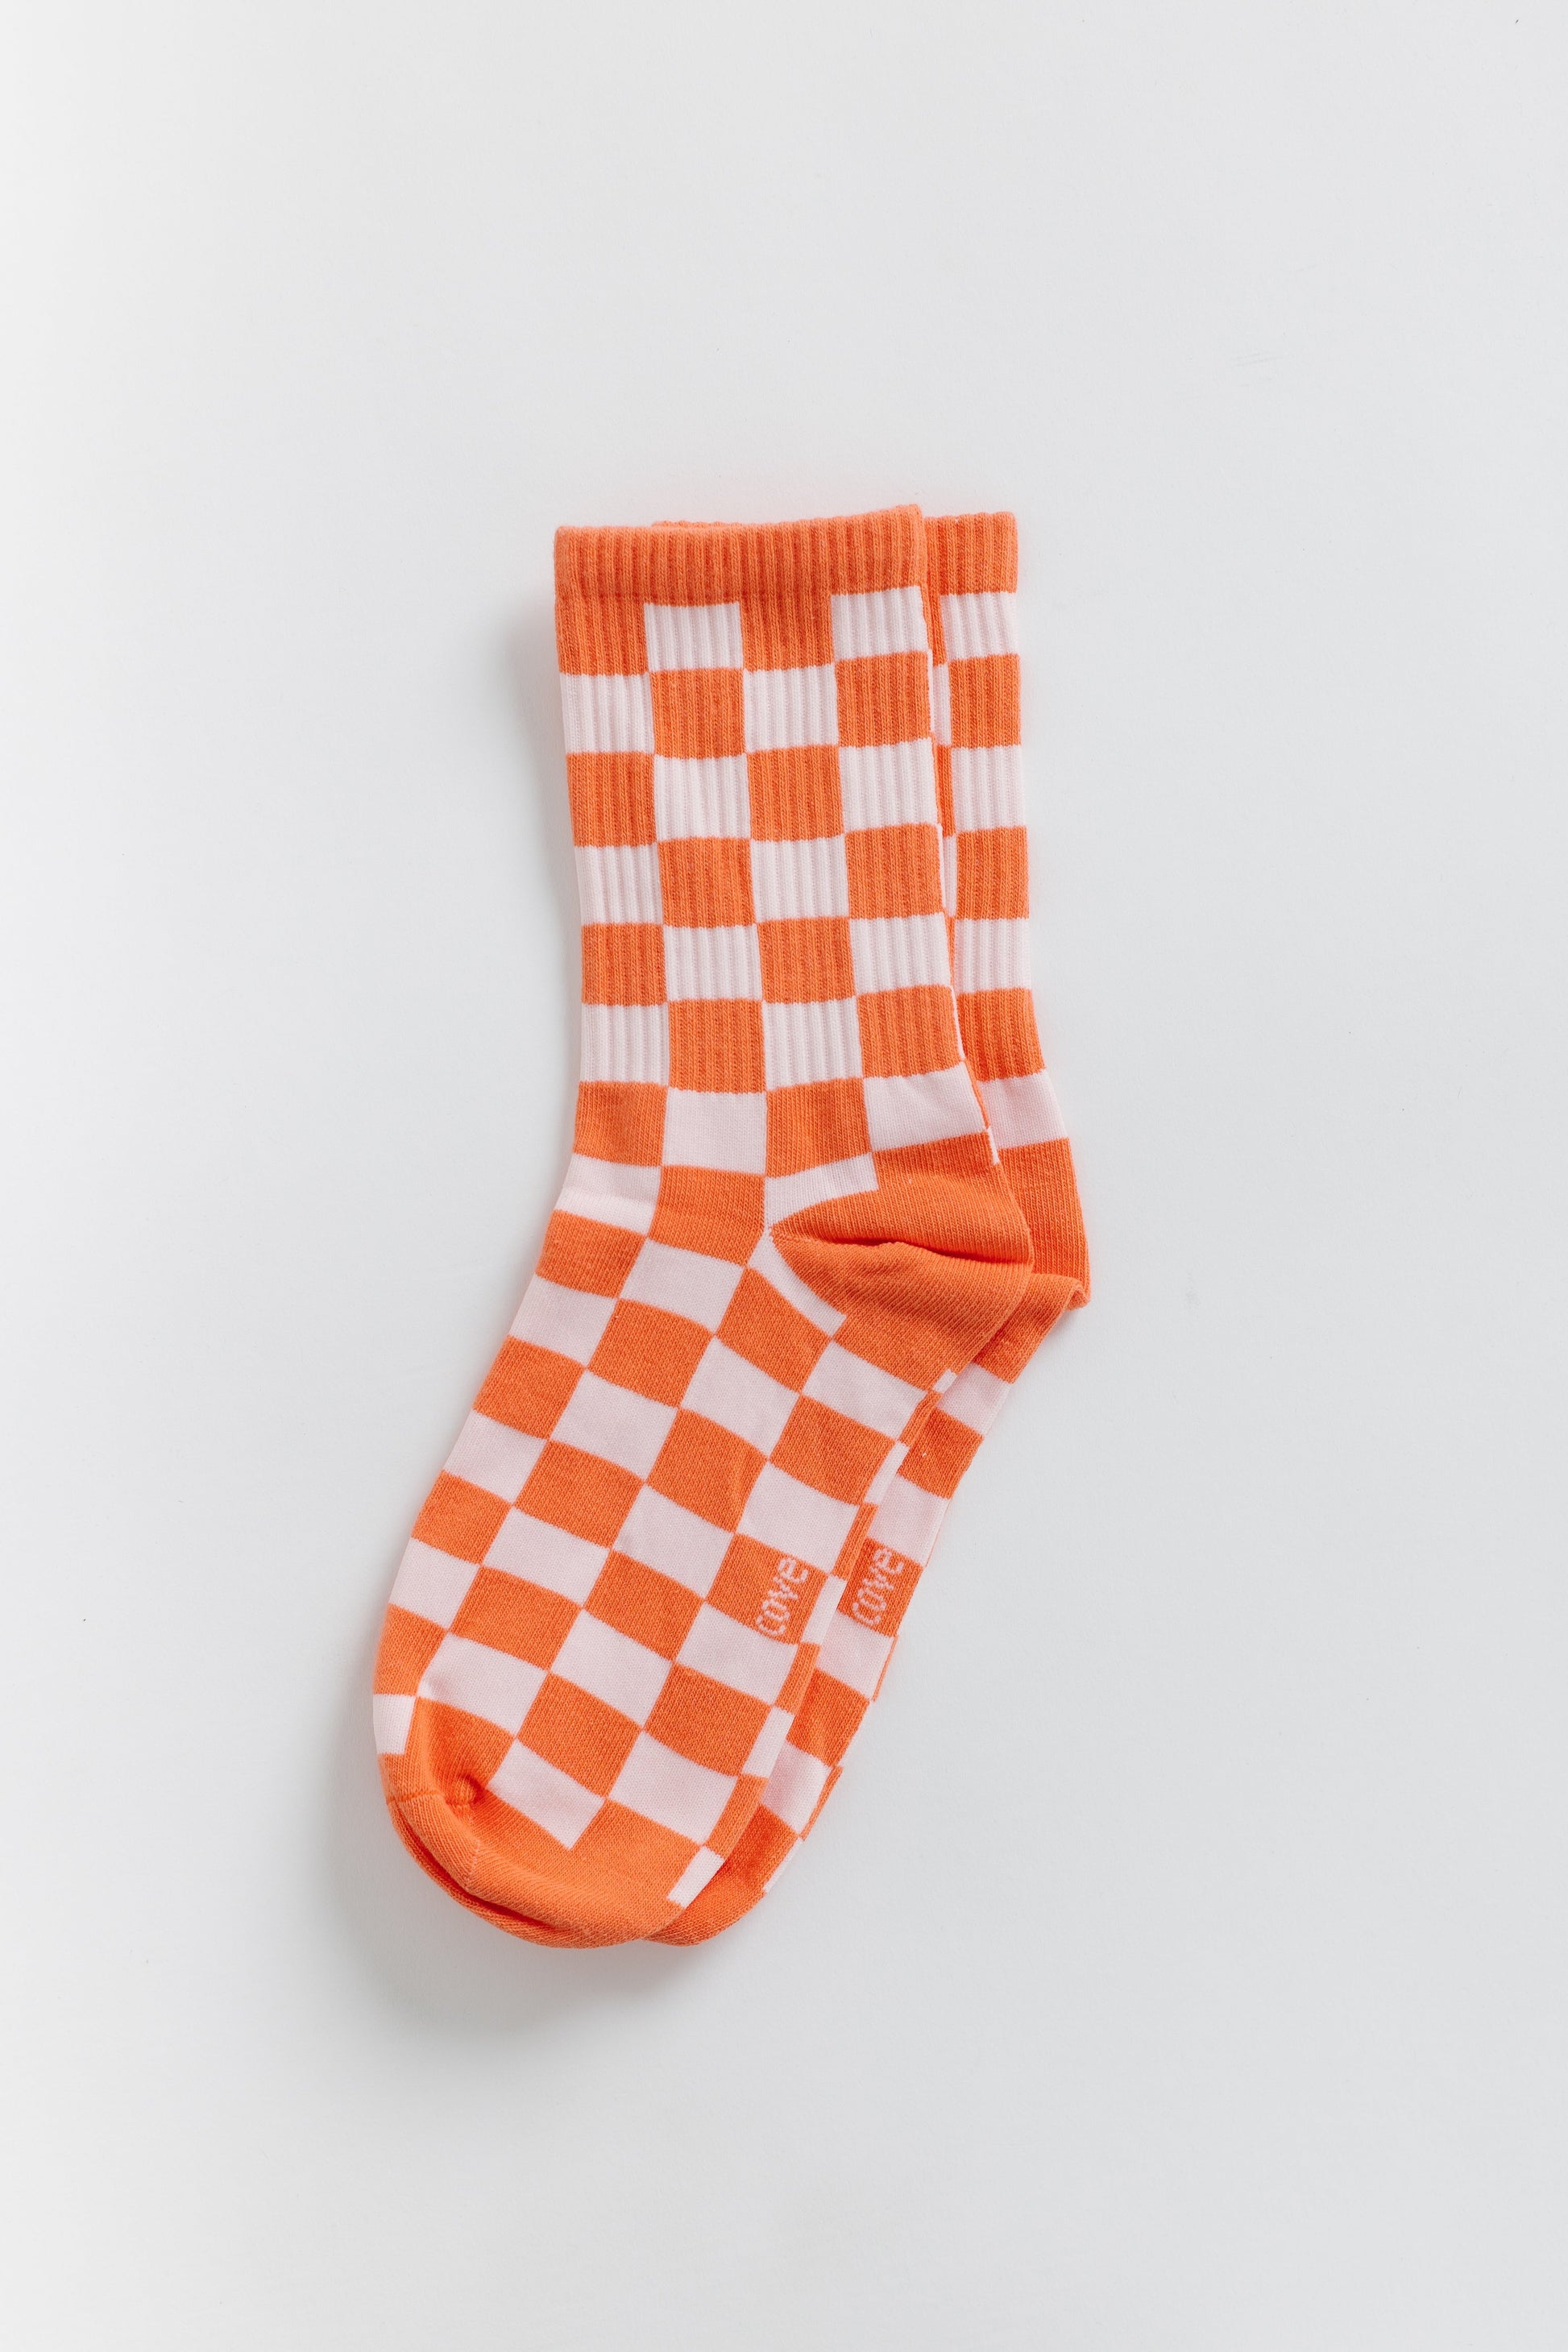 Cove Checker Retro Socks WOMEN'S SOCKS Cove Accessories Orange/Pink OS 